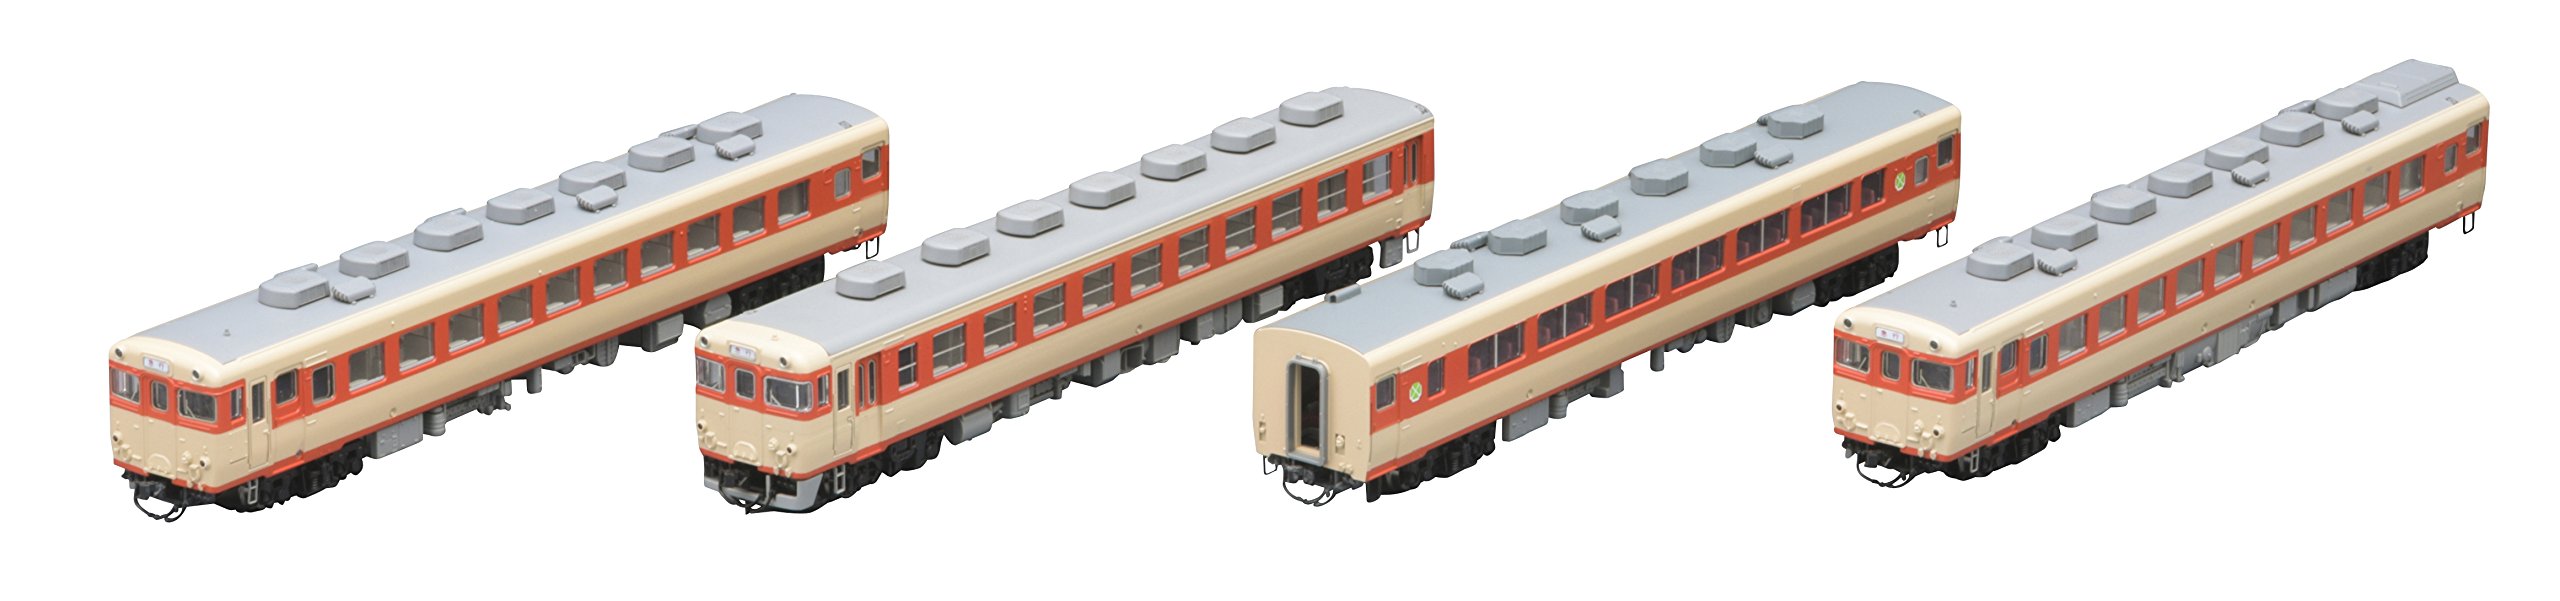 Tomytec Tomix N Gauge Kiha58 Series 4-Car Yufu Express Diesel Railway Model 98283